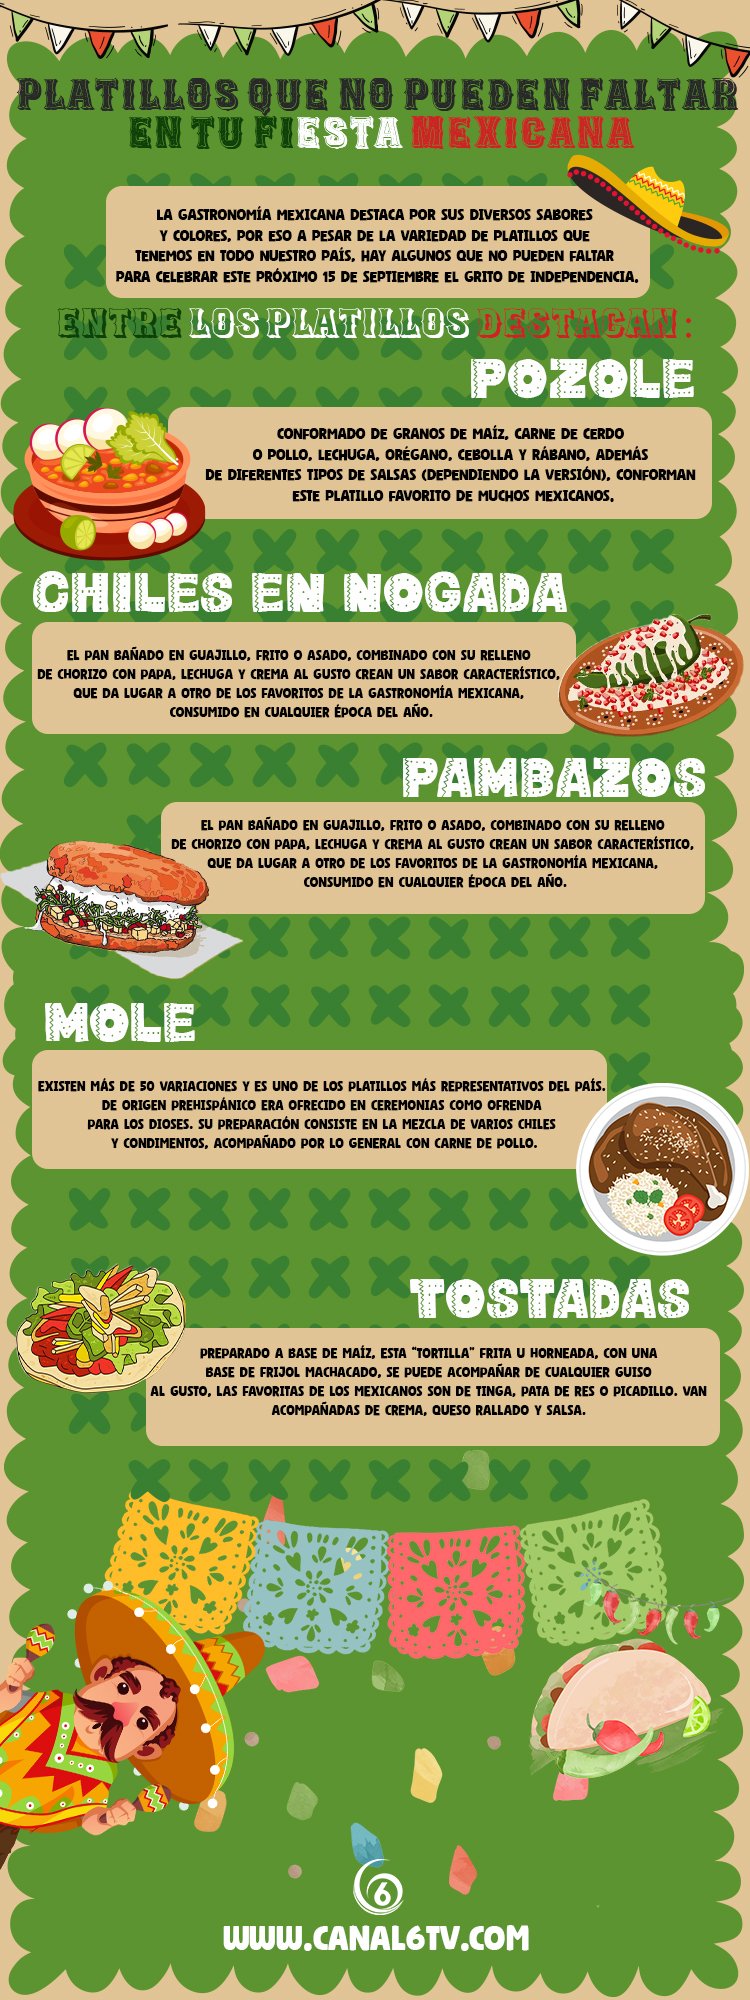 Platillos que no pueden faltar en tu fiesta mexicana